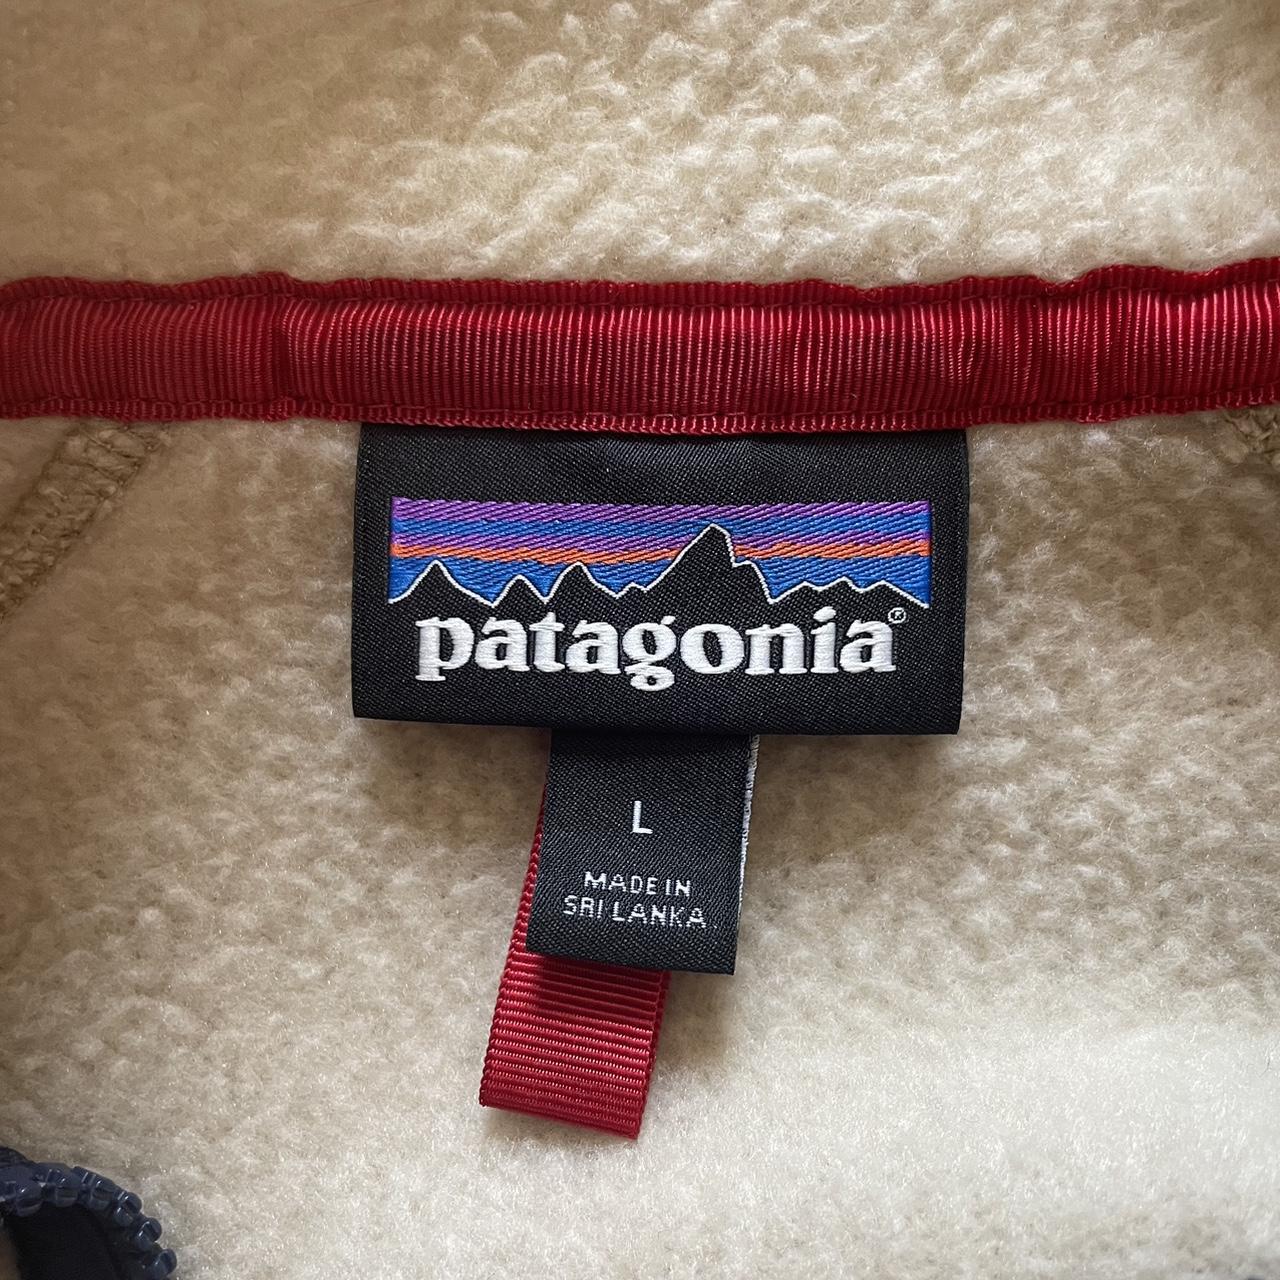 Patagonia Men's Retro Pile Fleece Jacket WORN... - Depop